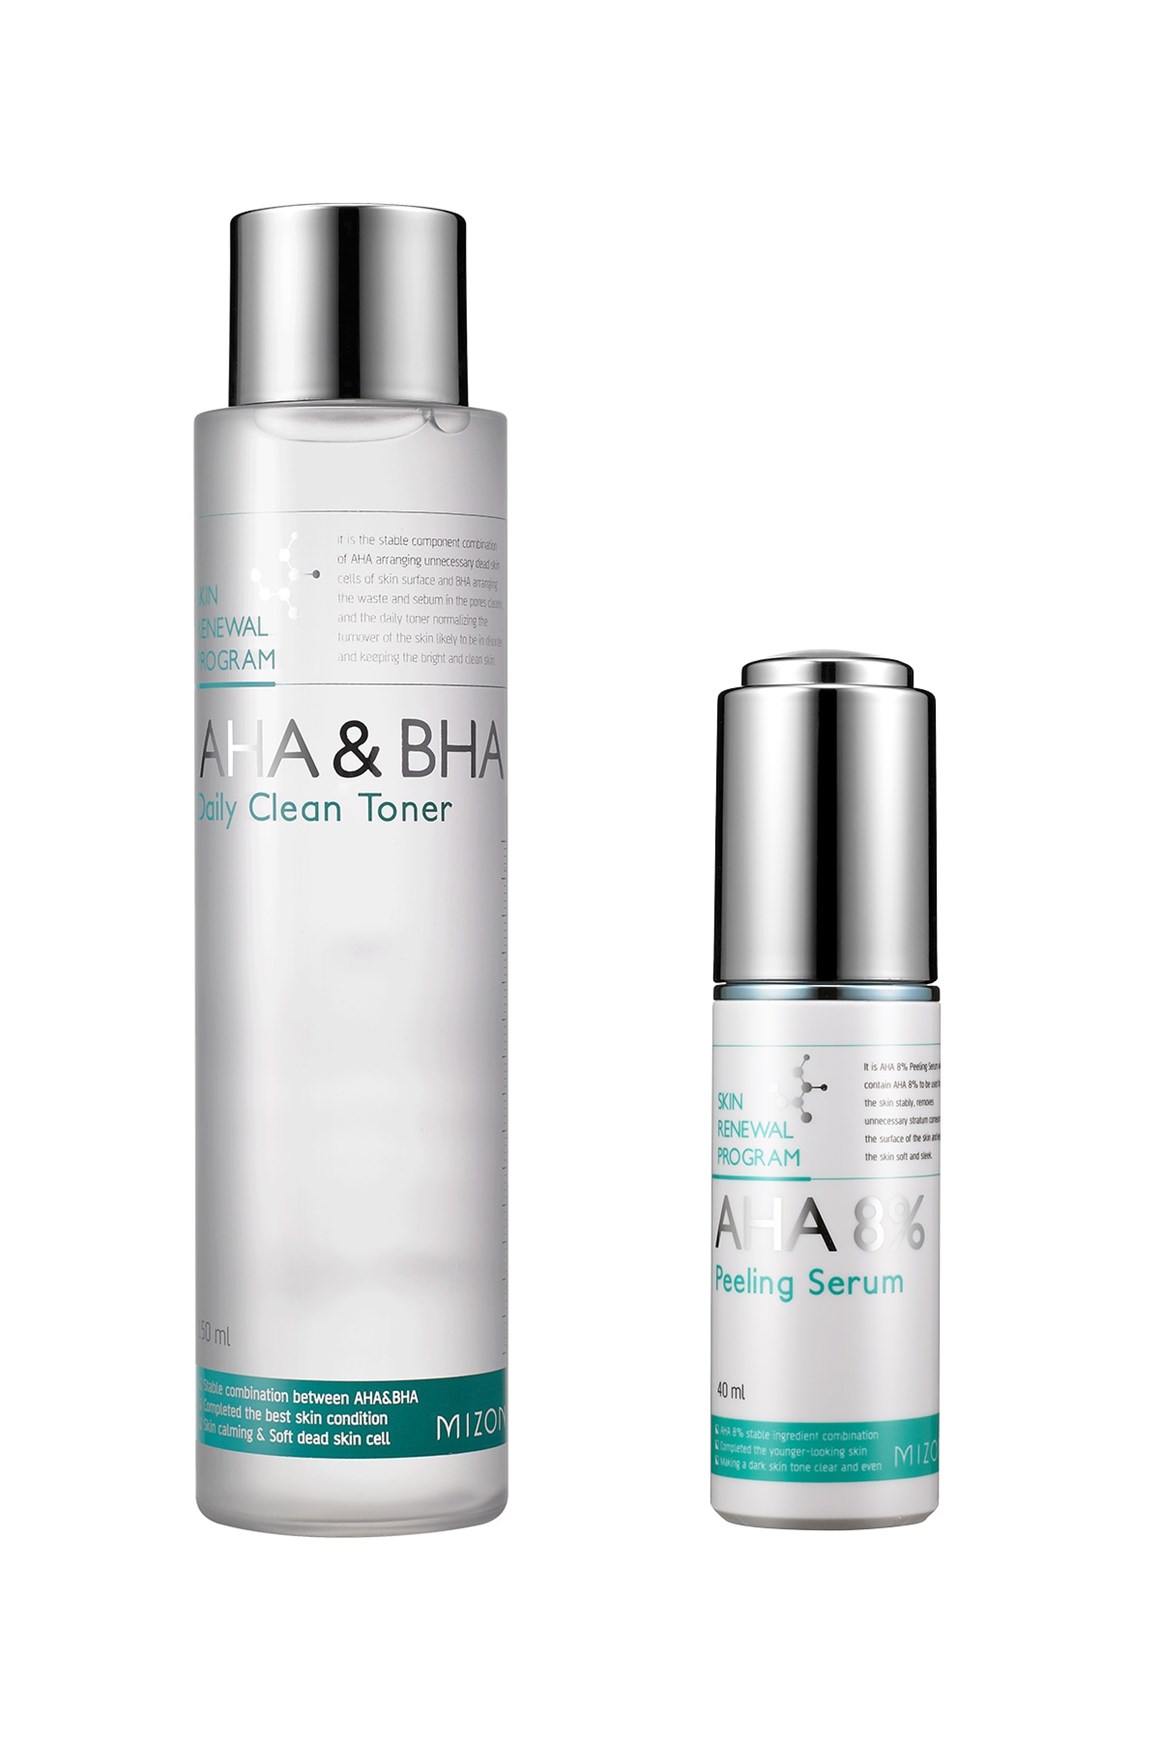 Mizon AHA & BHA Daily Clean Toner & AHA 8% Peeling Serum | Justin Beauty